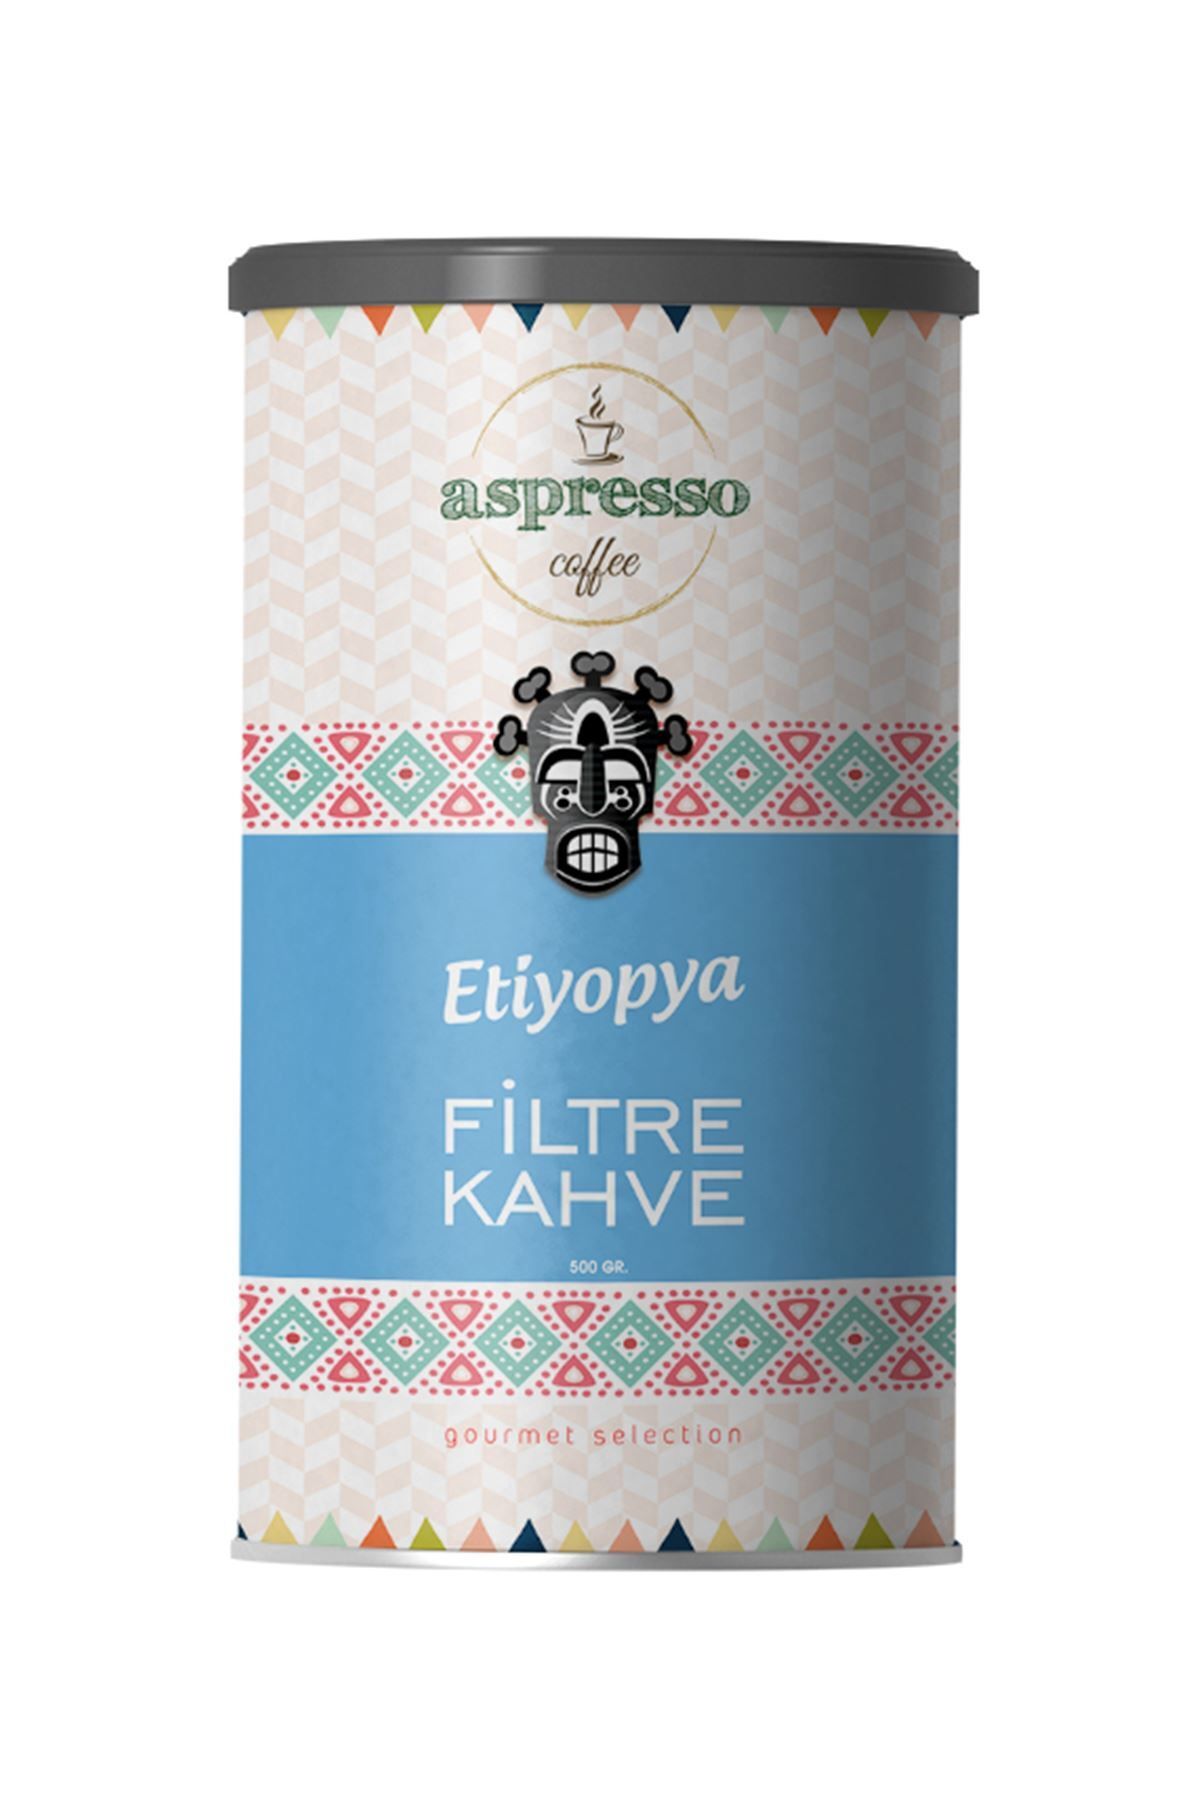 aspresso Etiyopya Filtre Kahve 500 Gr.